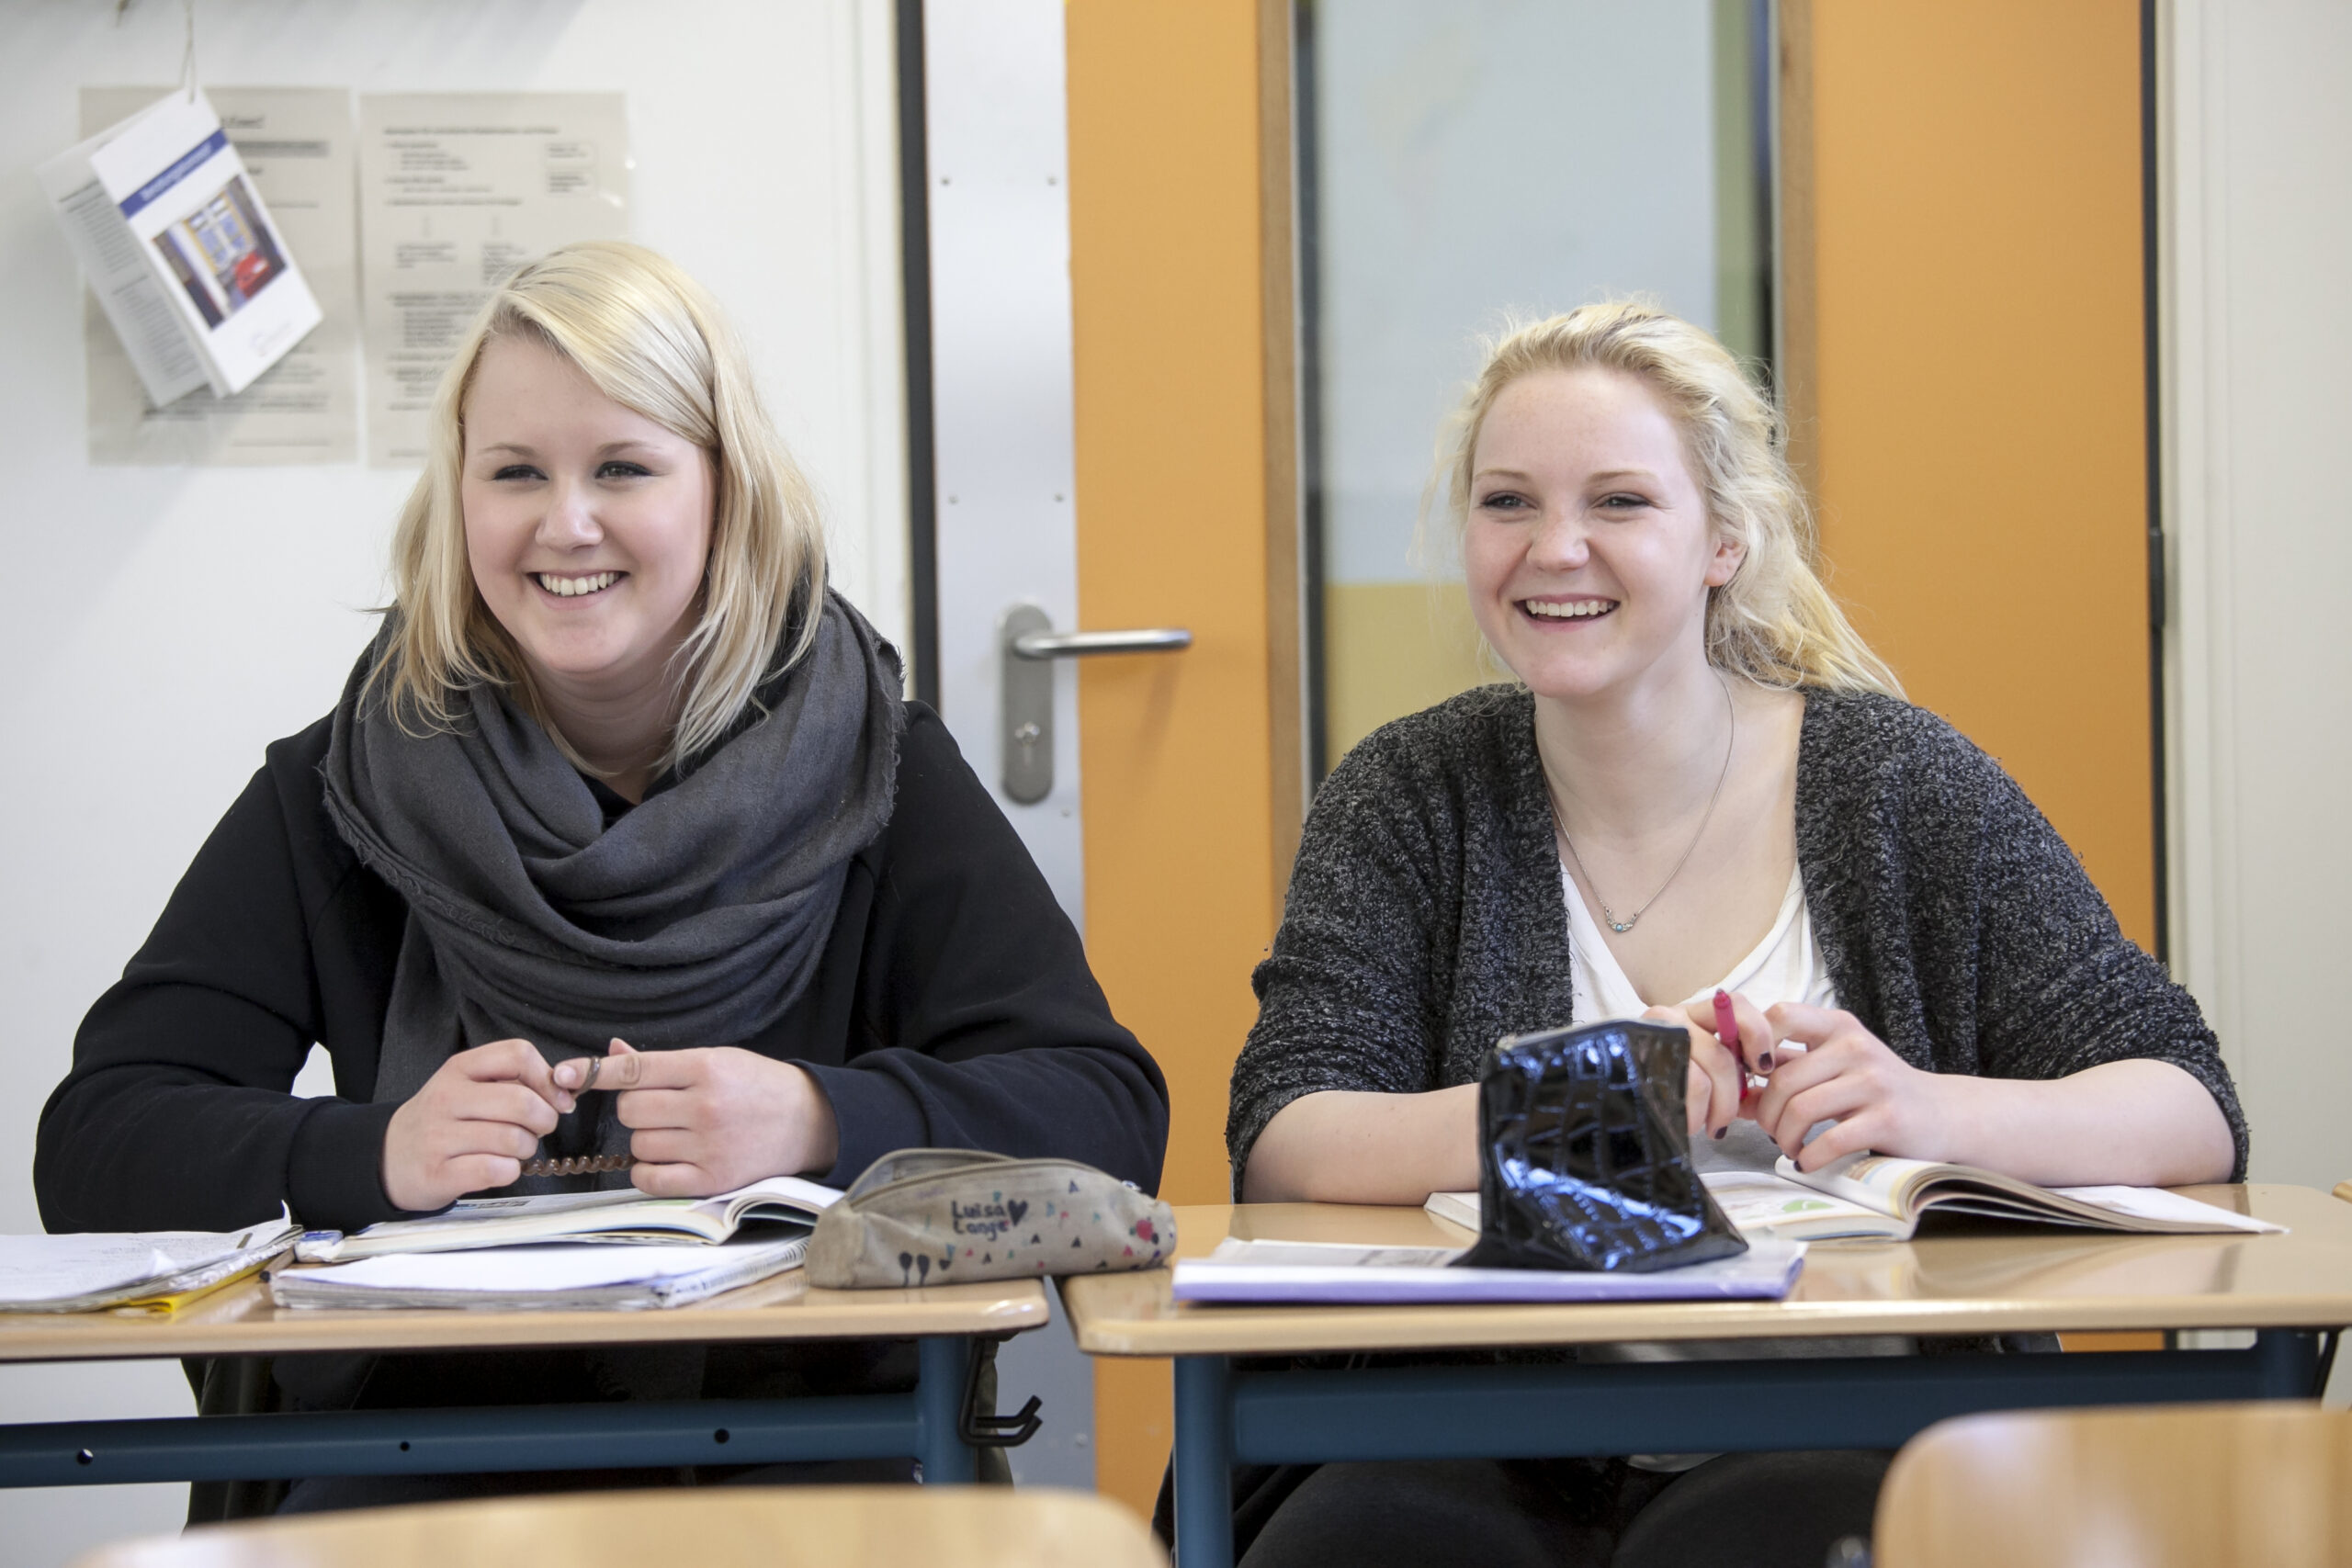 Das Bild zeigt 2 junge blonde Frauen, die beide lächelnd an einem kleinen Tisch sitzen und vor sich ein Schulbuch aufgeschlagen haben.